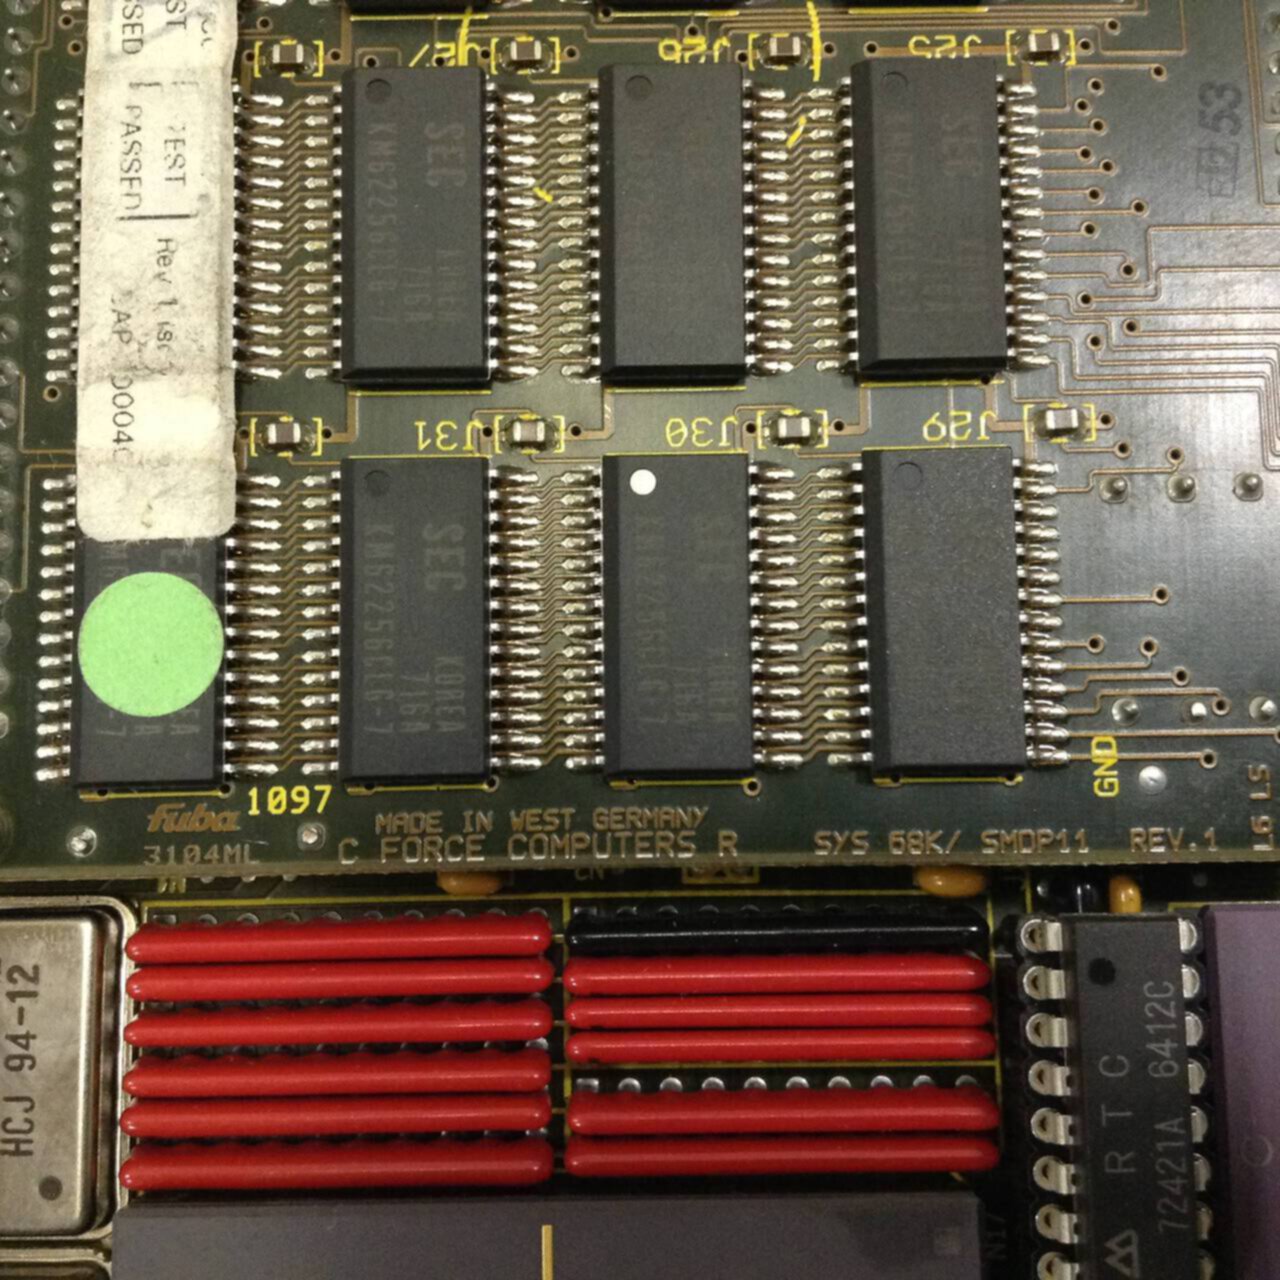 ON762 Reis SYS68K CPU-23XS Rev 1 